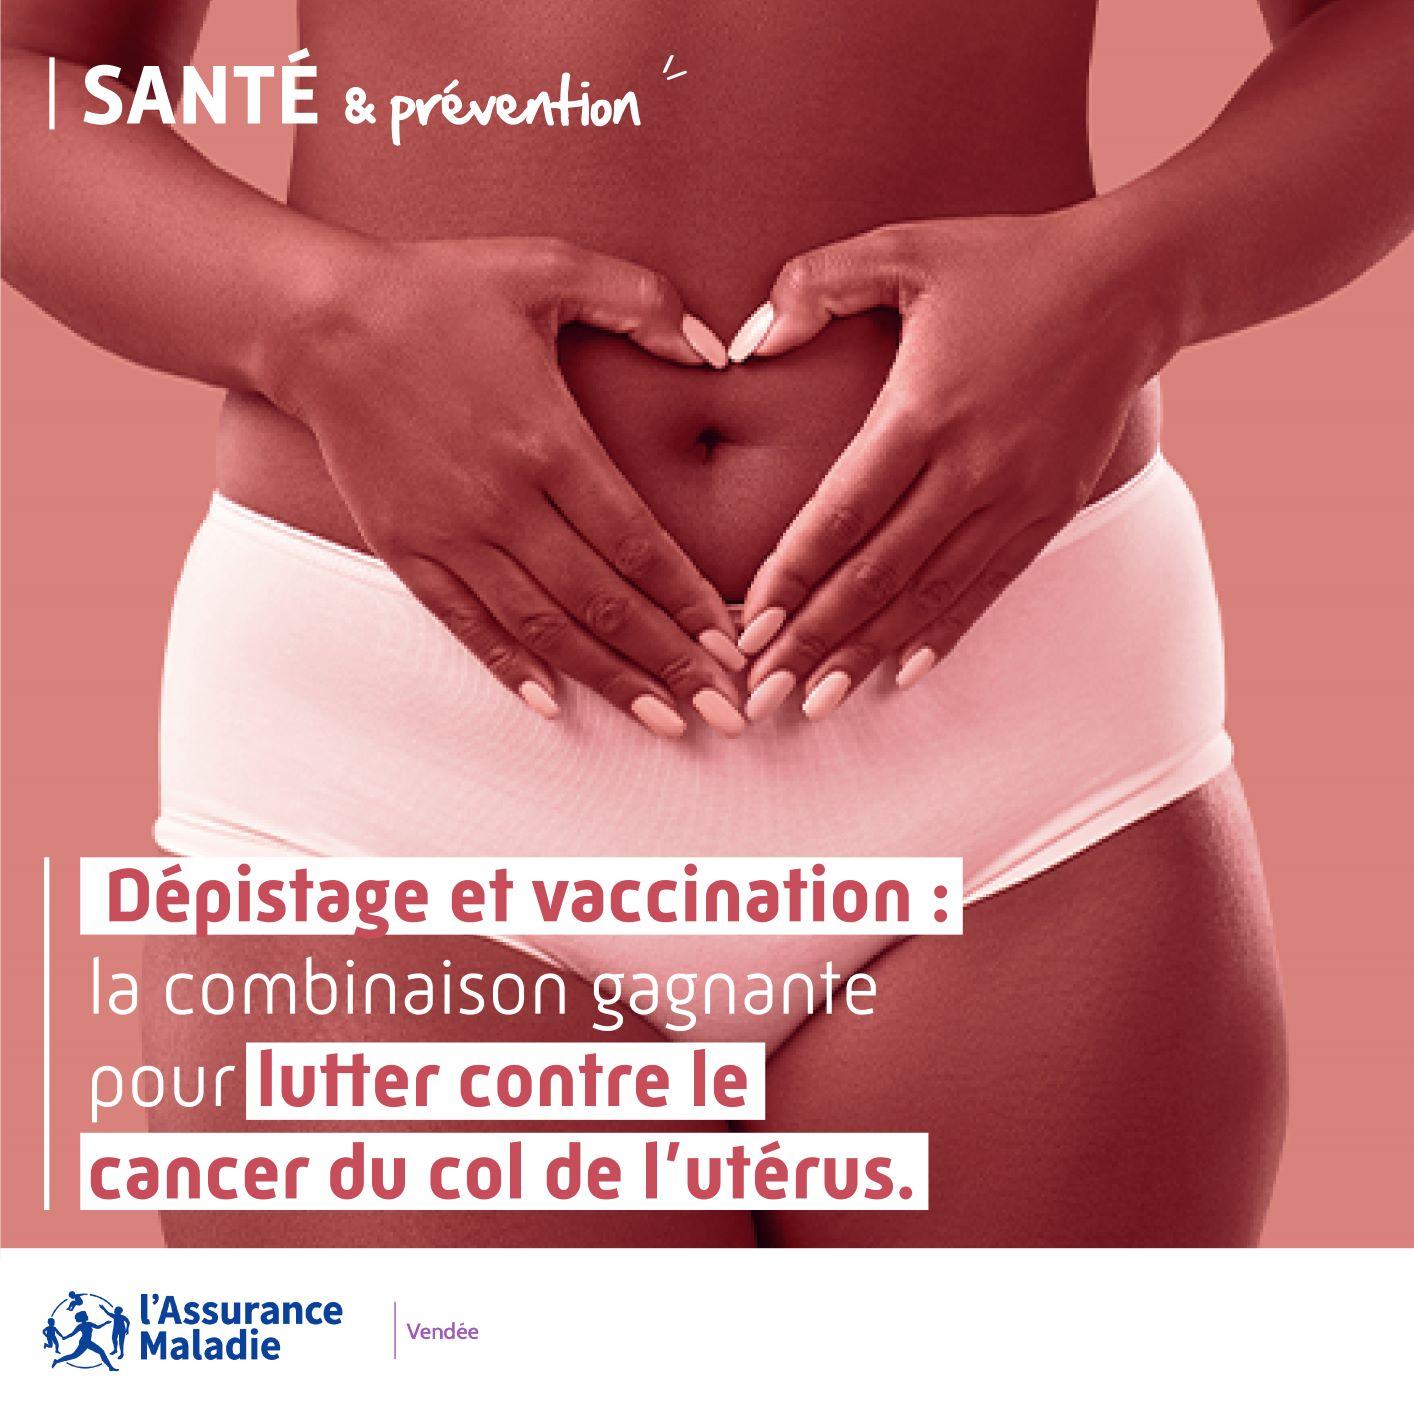 Auvergne-Rhône-Alpes: la vaccinazione contro l’HPV sta procedendo